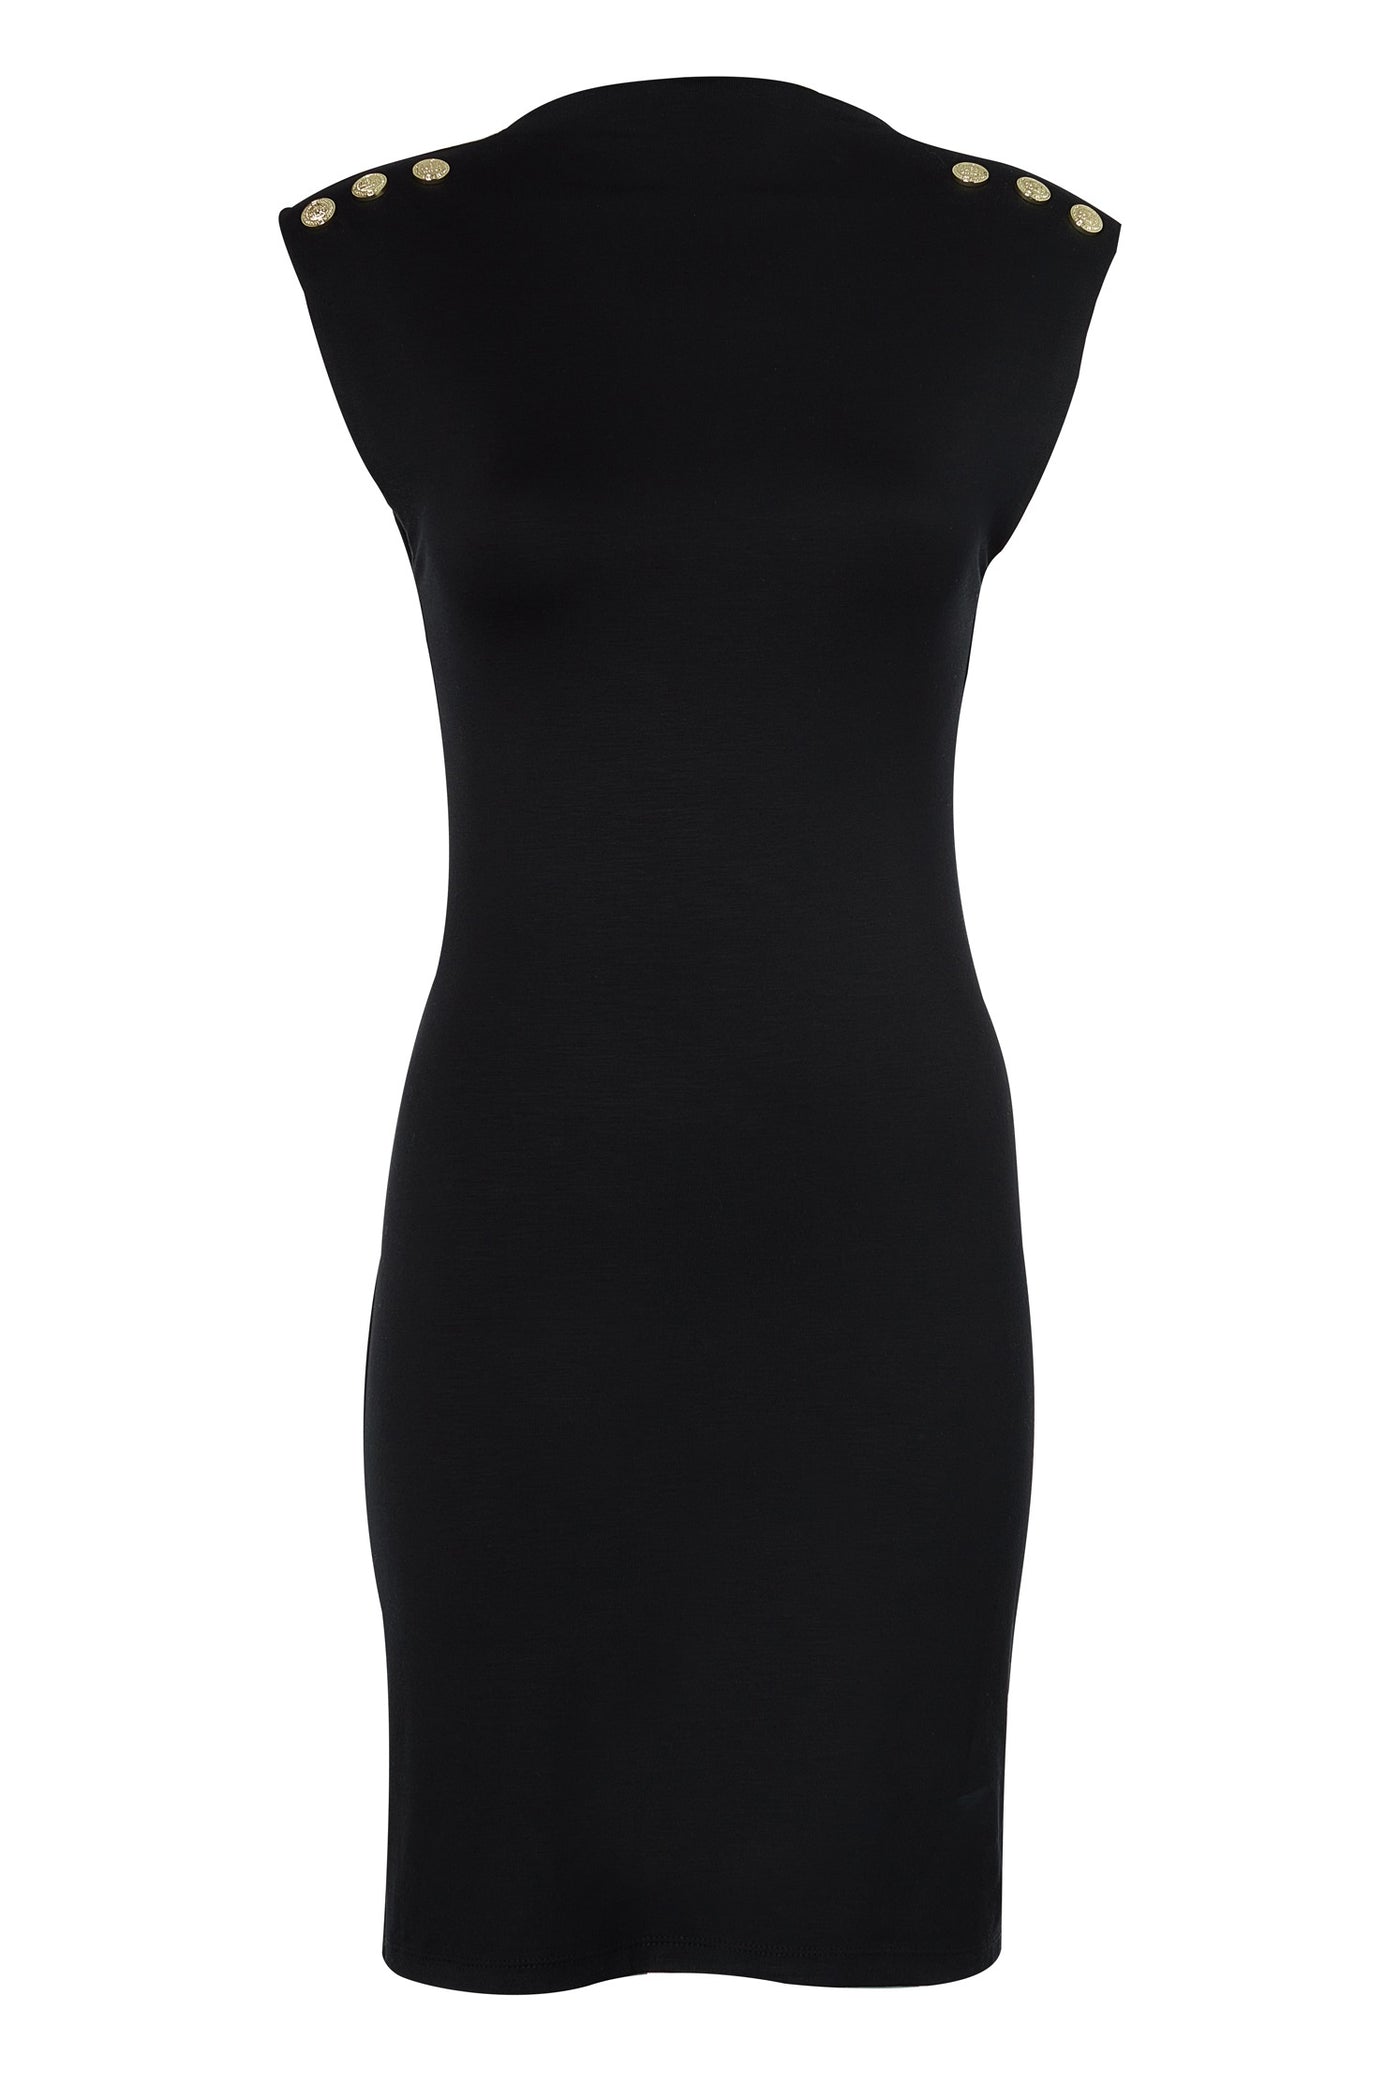 Holland Cooper Harper Sleeveless Mini Dress in Black Front